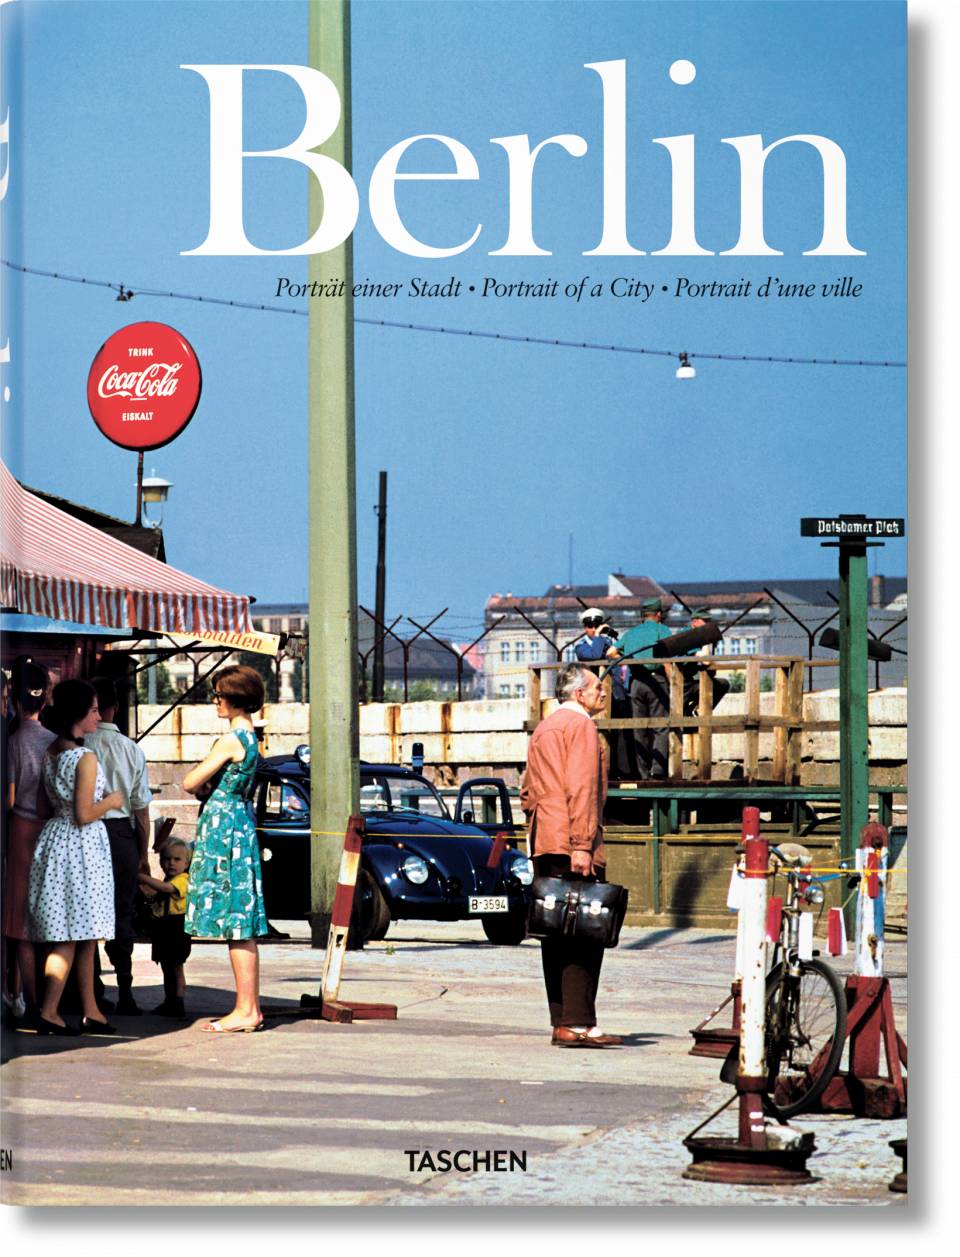 Publisher Taschen - Berlin.Portrait of a City (Taschen XL) - Taschen